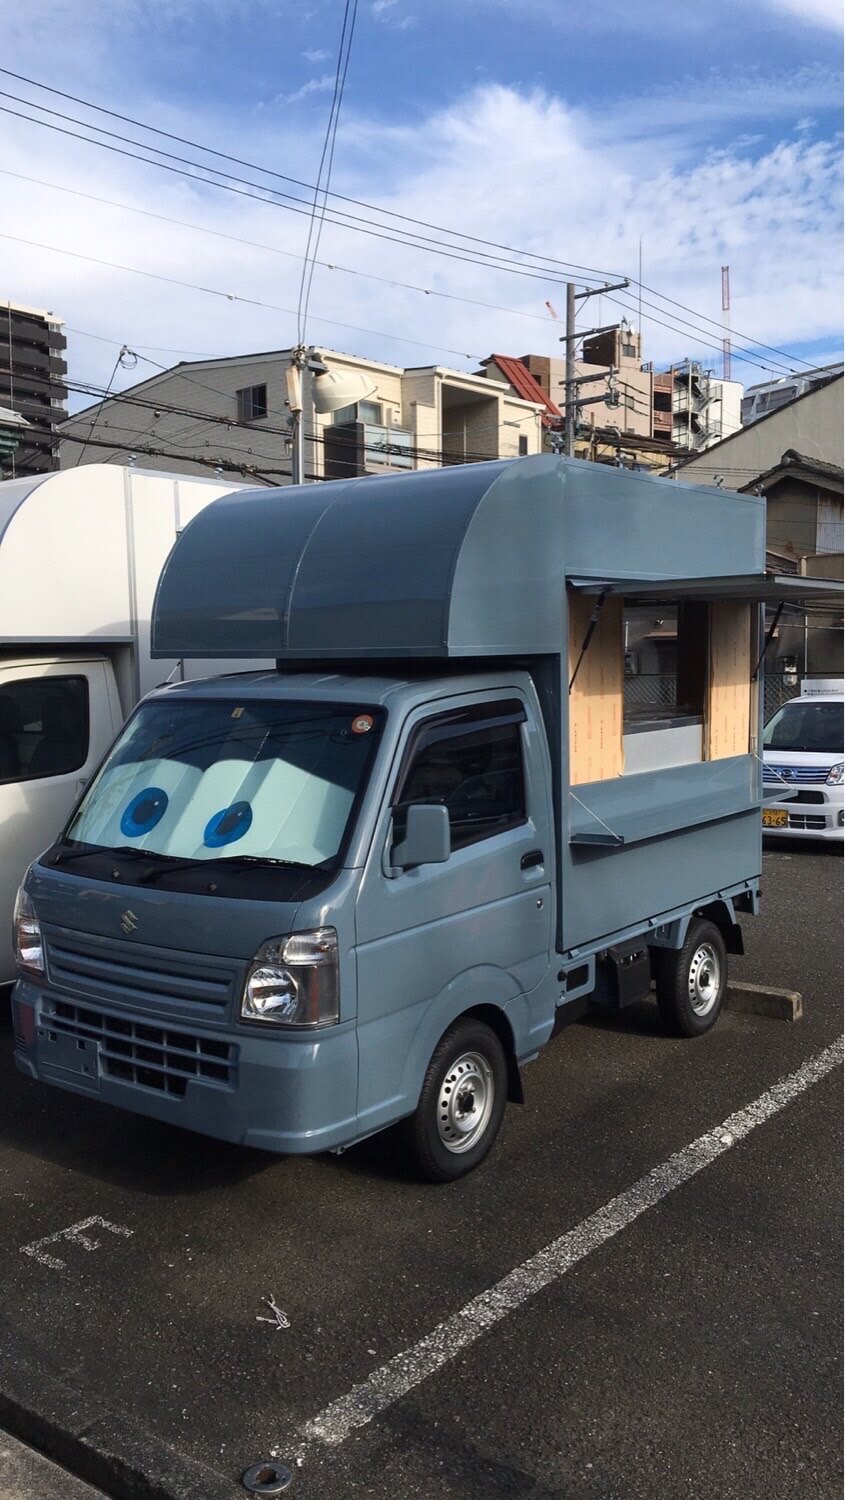 軽トラック】SUZUKI/キャリイのブルーのキッチンカー 移動販売車 